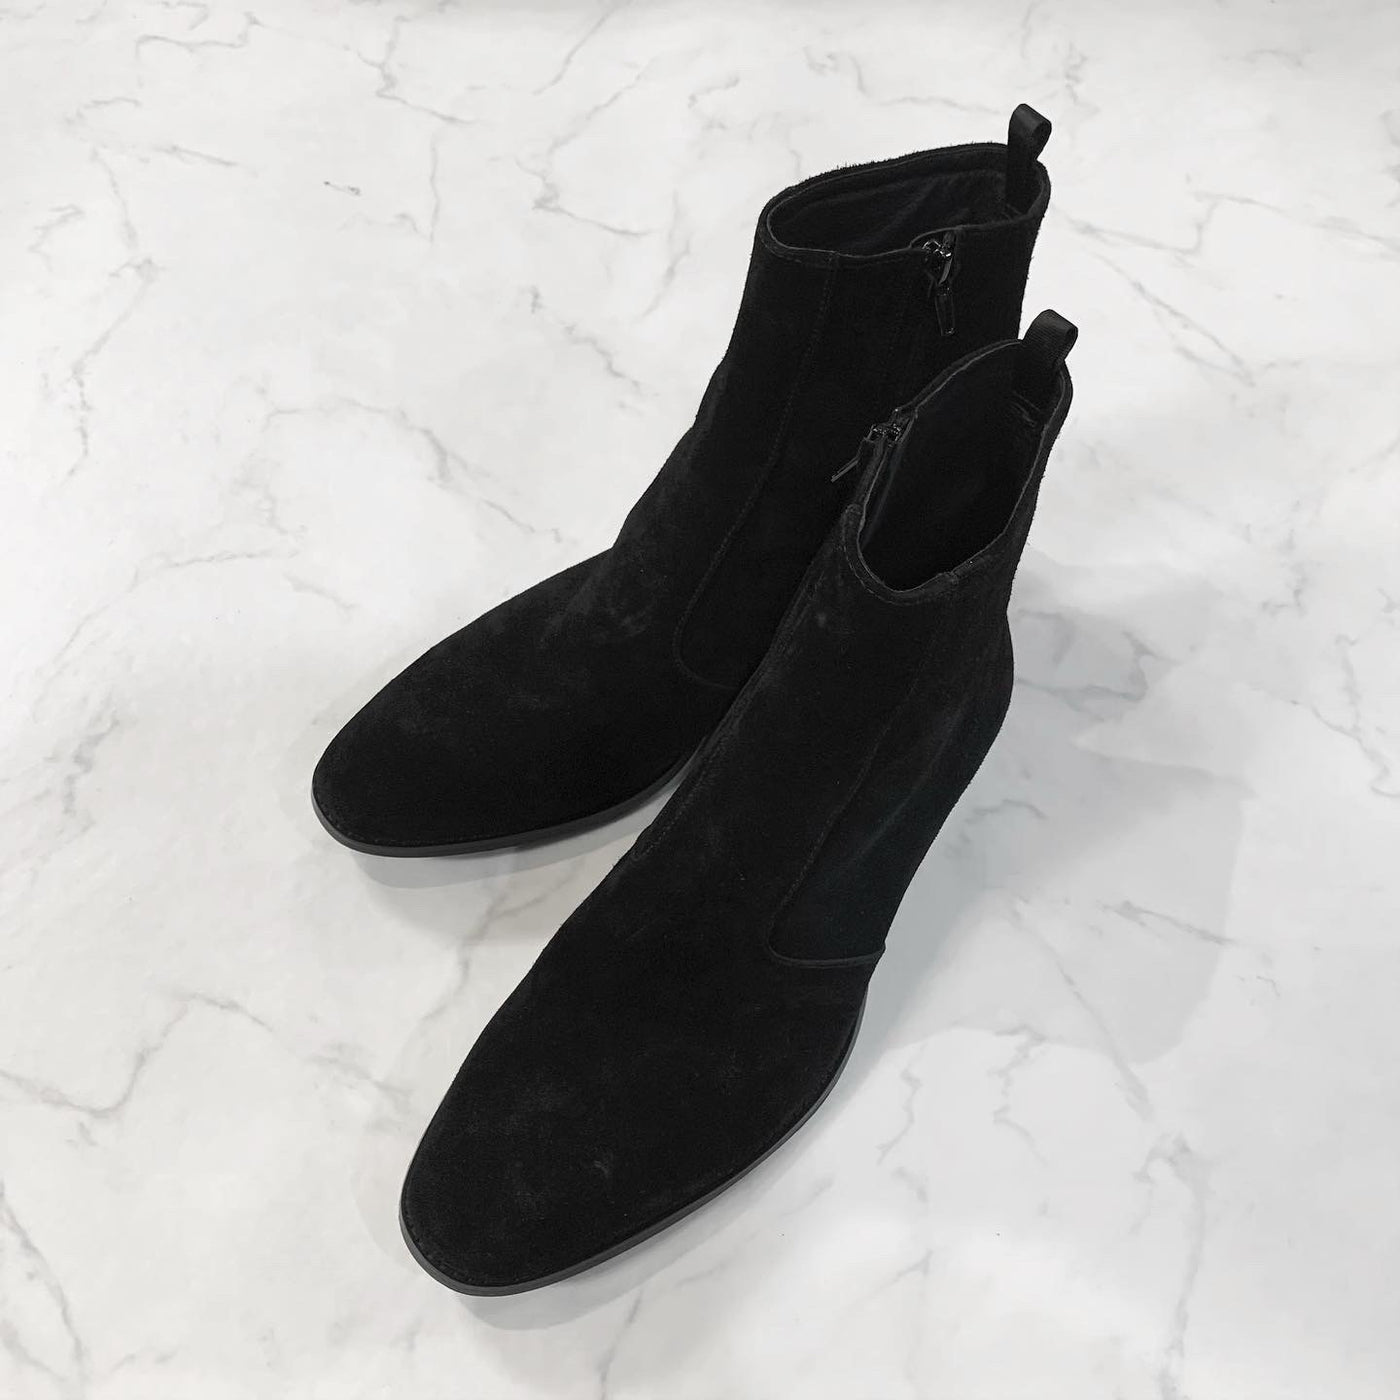 PANERO 40mm heel boots “Suede” (black)